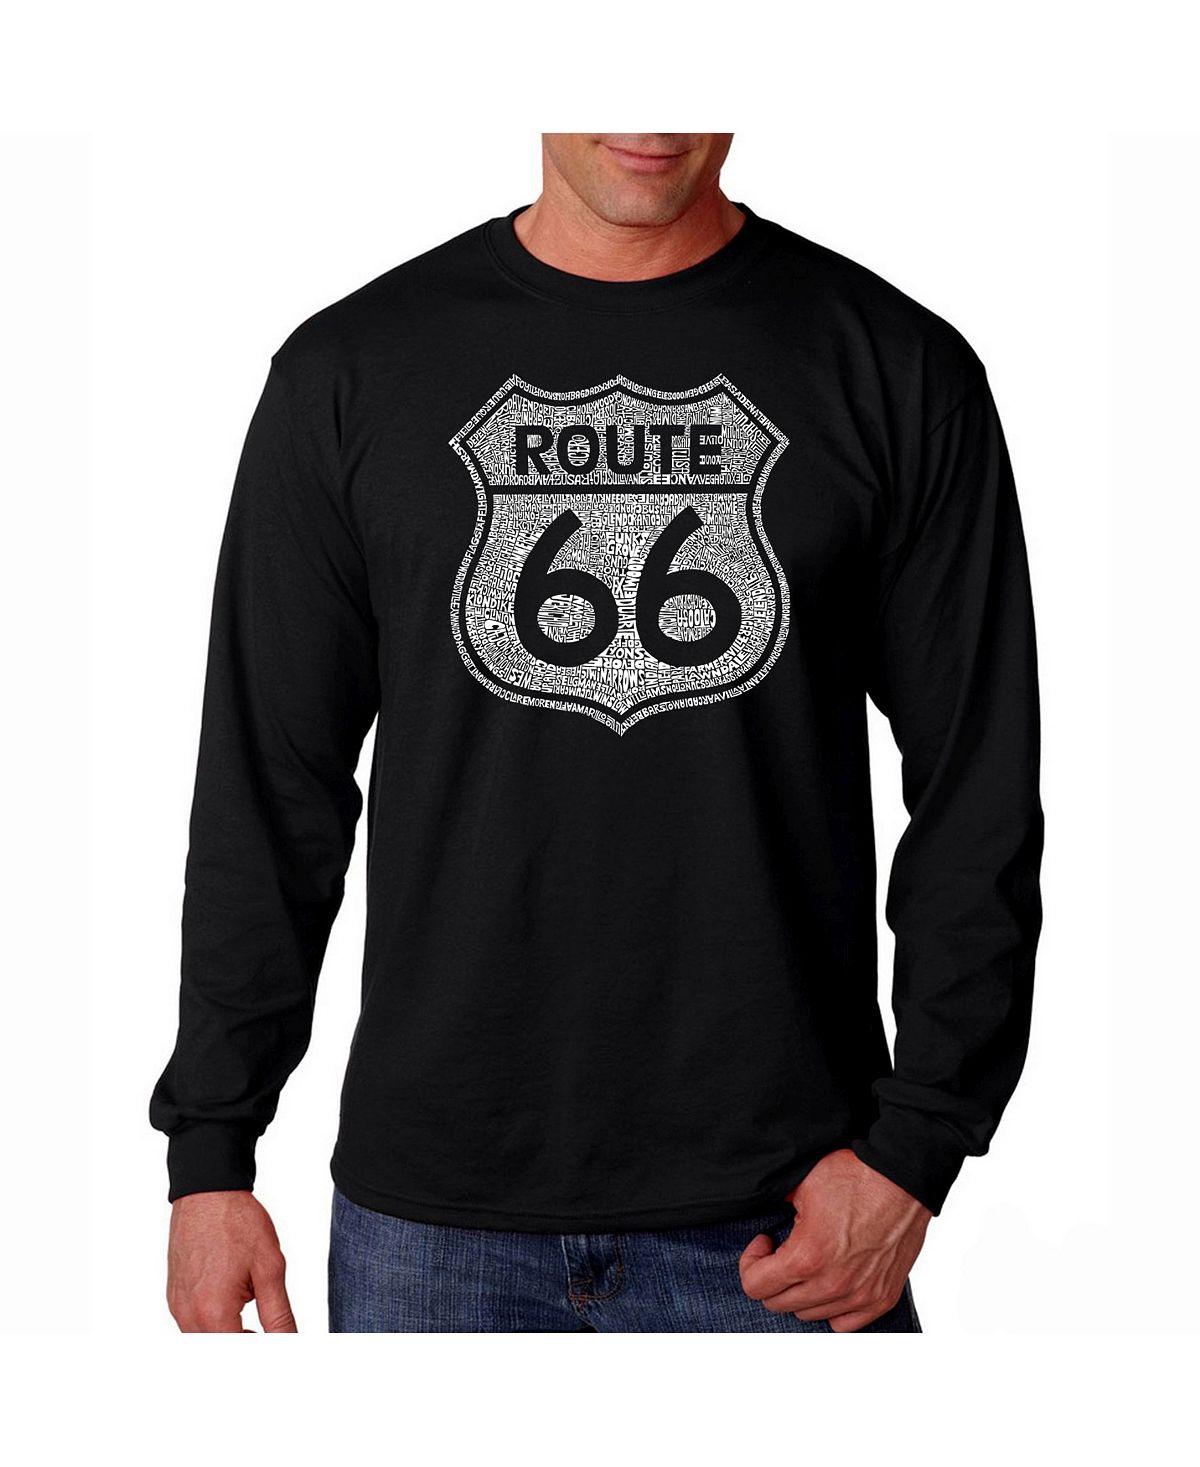 Мужская футболка с длинным рукавом word art - route 66 LA Pop Art, черный мужская футболка с длинным рукавом word art route 66 la pop art черный